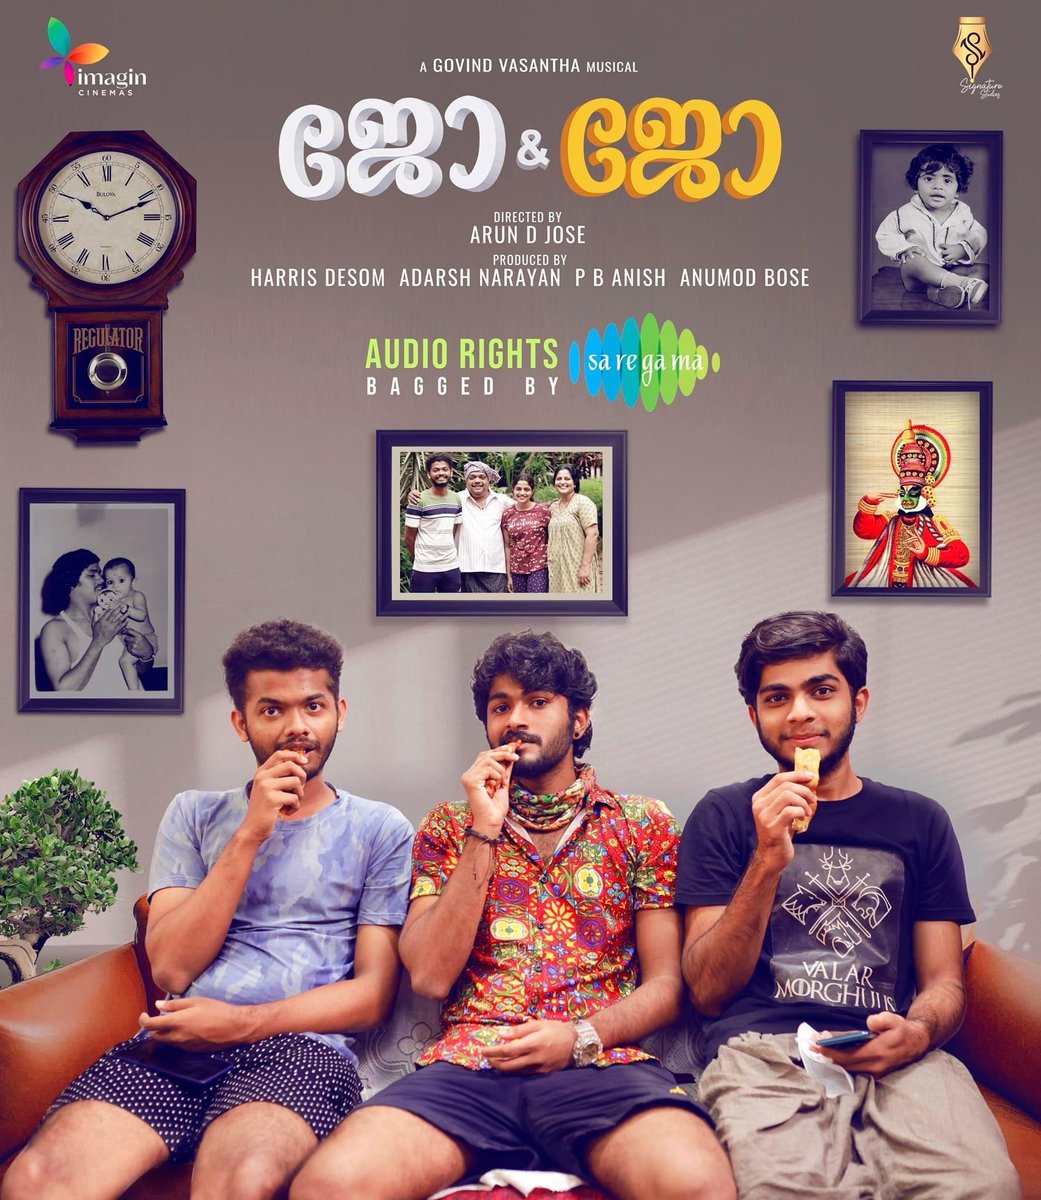 New poster! 
#ArunDJose’s directorial movie #JoAndJo! 
Starring: #Mathew, #NikhilaVimal and #Naslen!